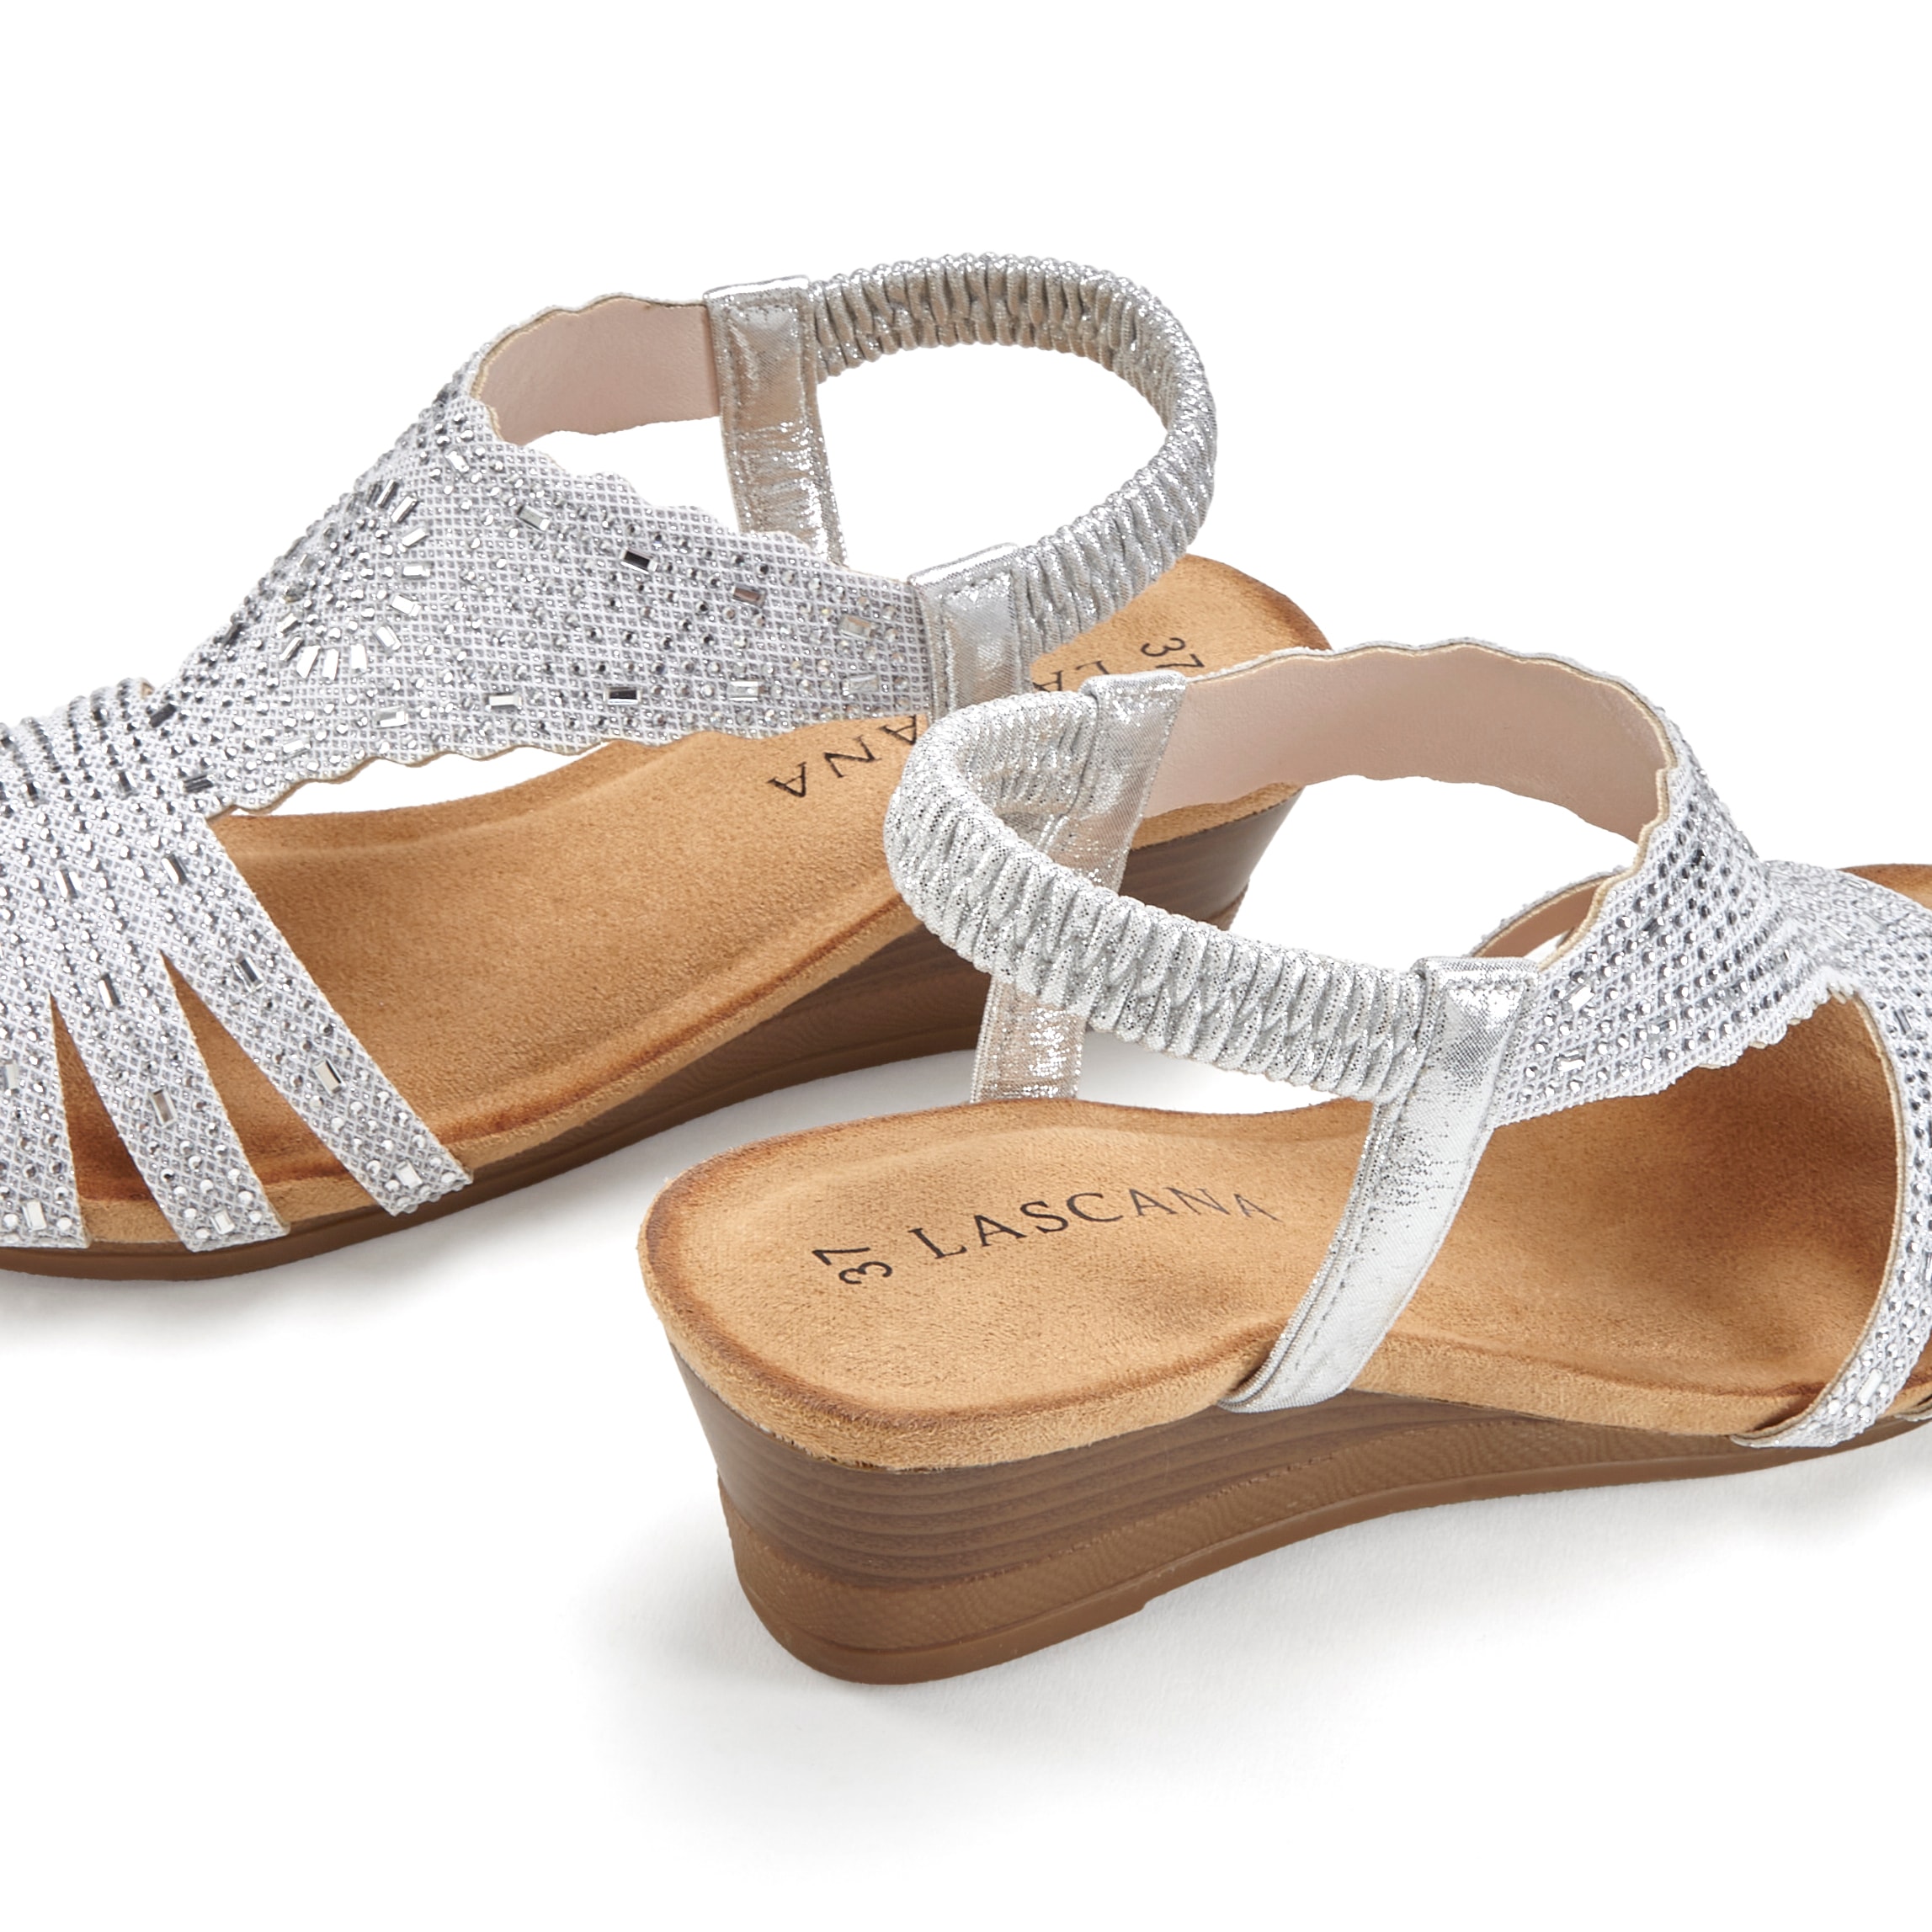 LASCANA Sandalette, Sandale, Sommerschuh mit Glitzerdetails und elastischem Riemchen